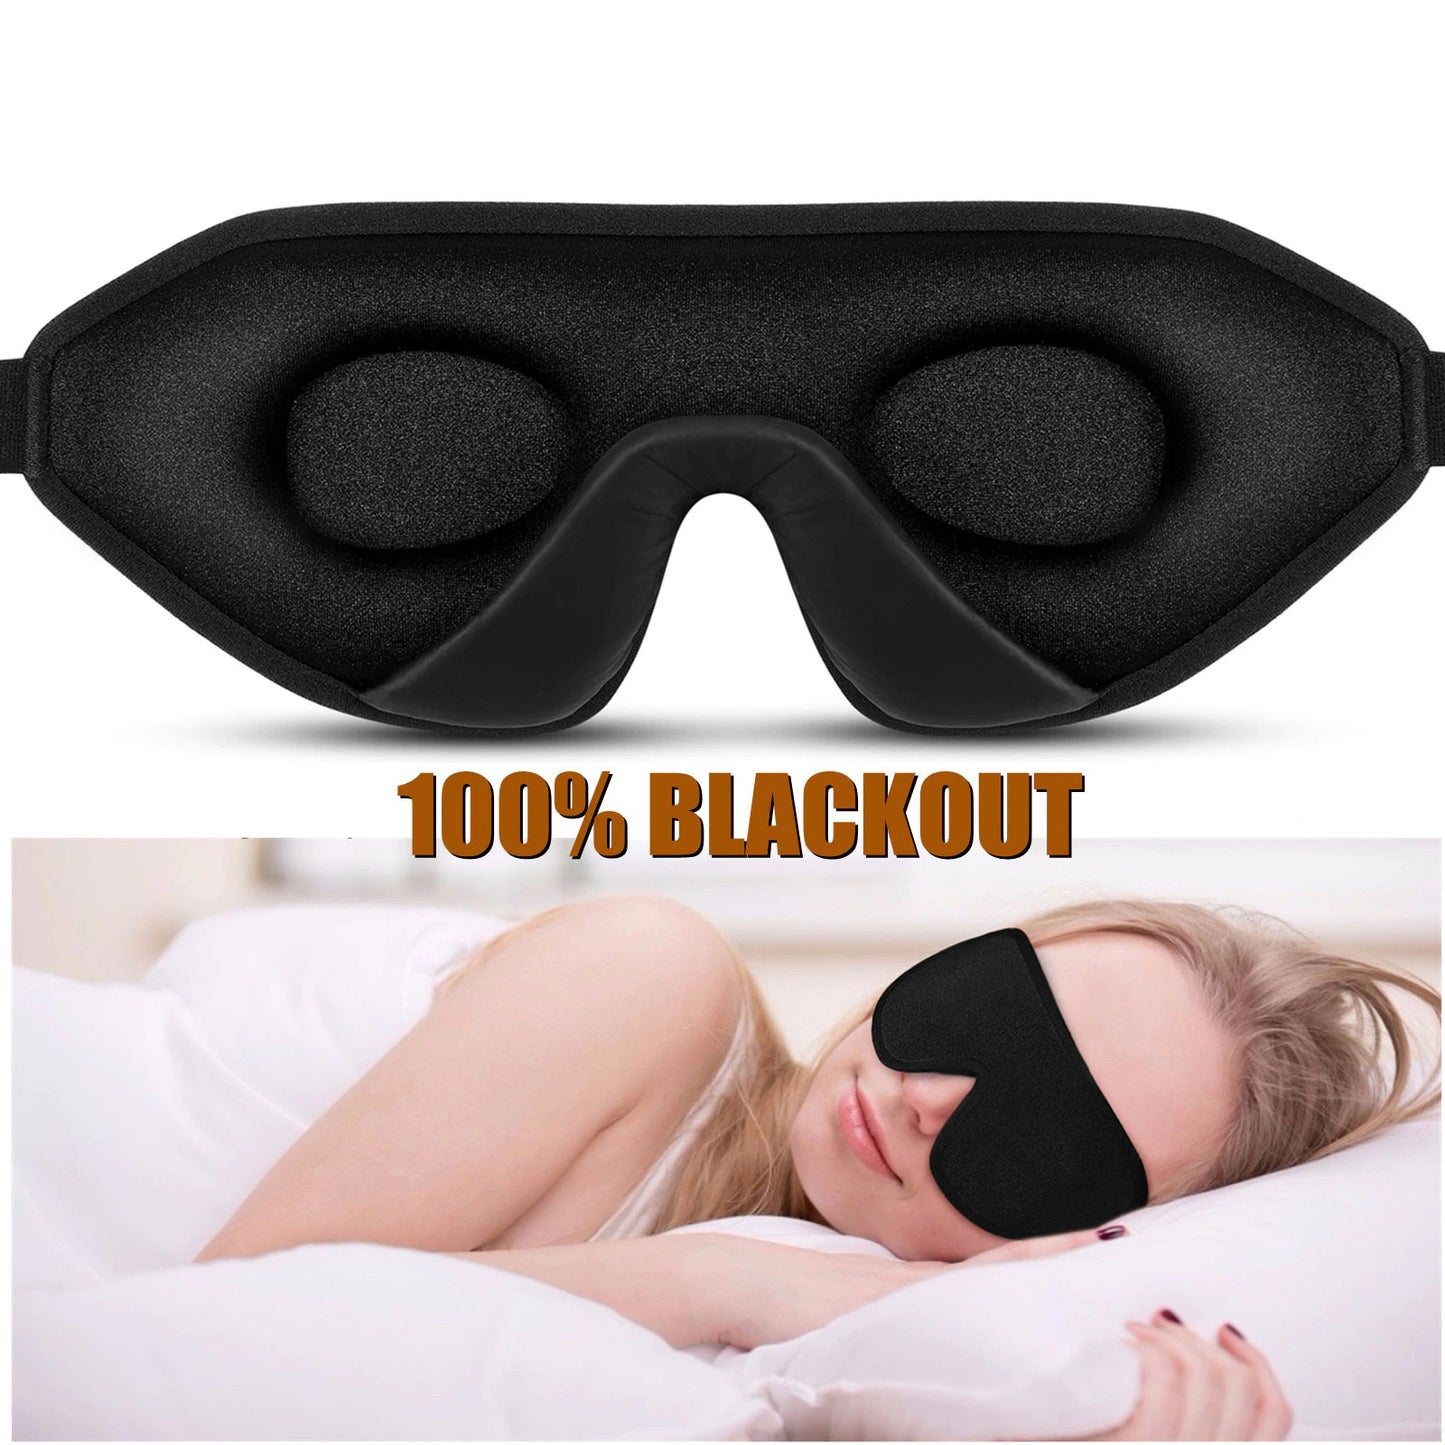 Máscara de Dormir 3D Blackout Tapa Olhos - GosteiQuero